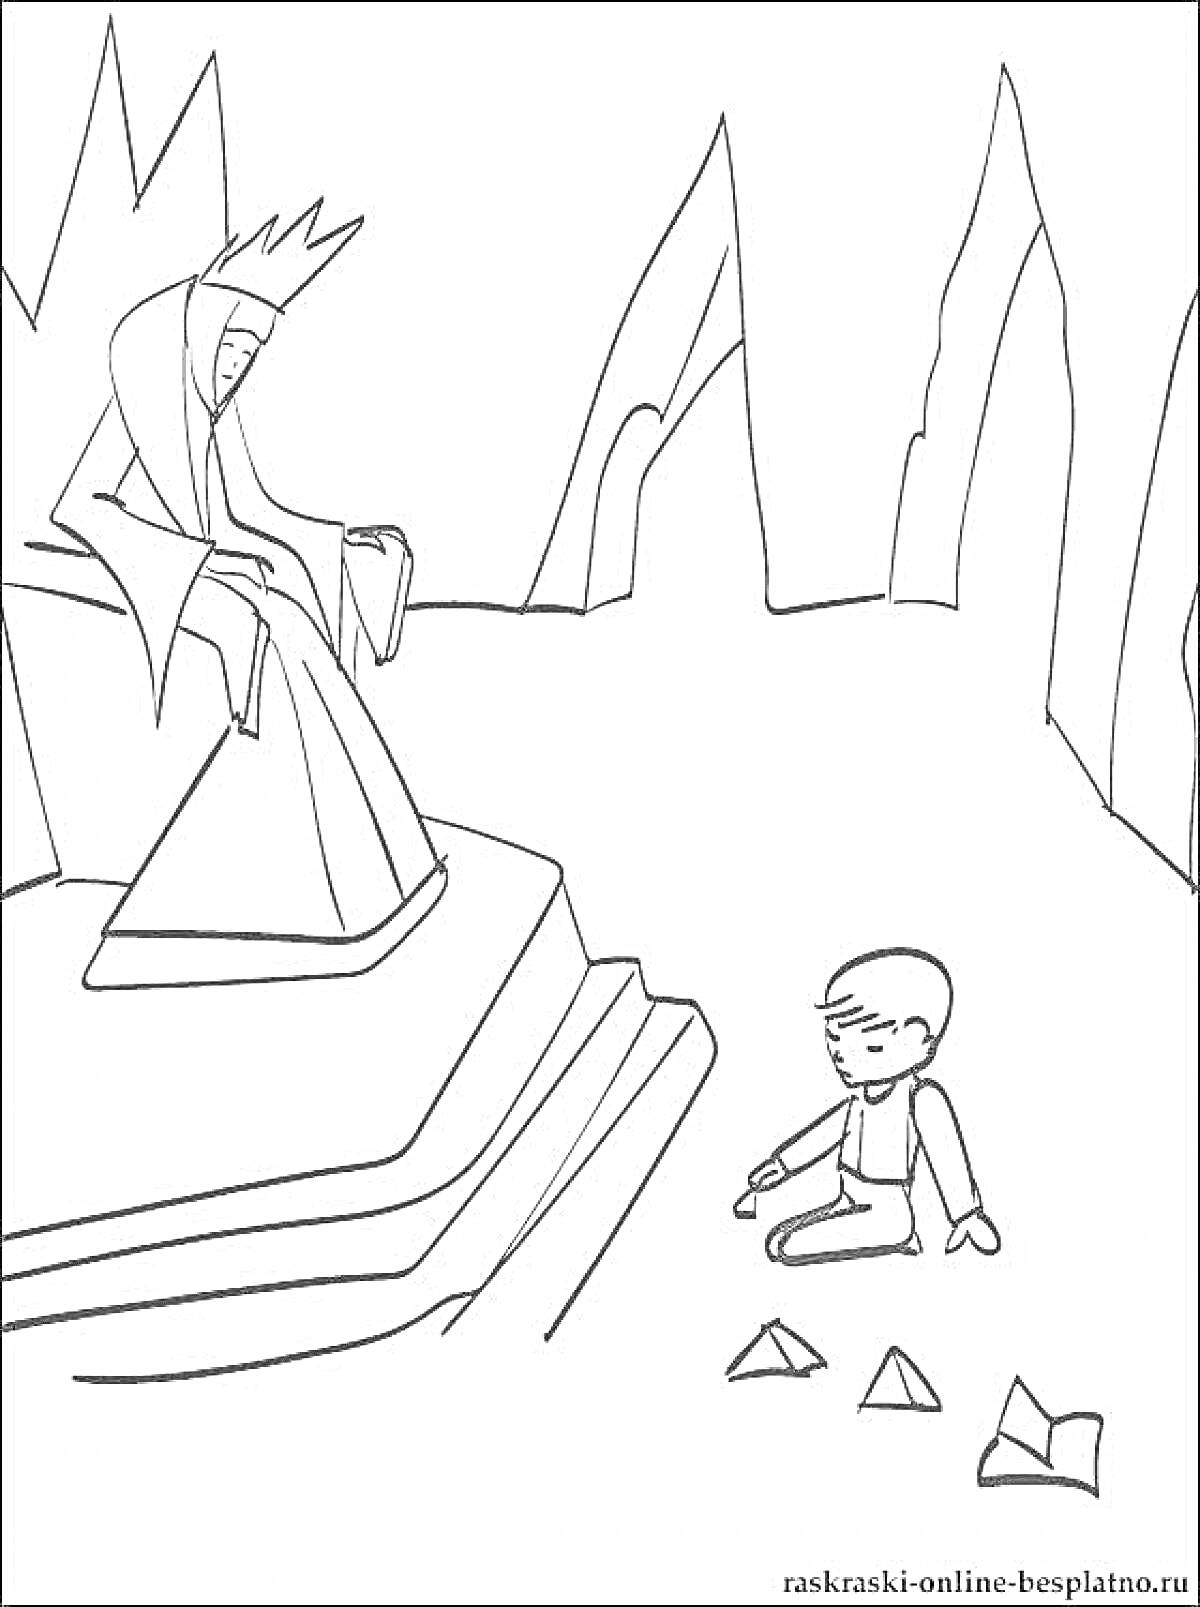 Раскраска Снежная королева на троне и мальчик с оригами